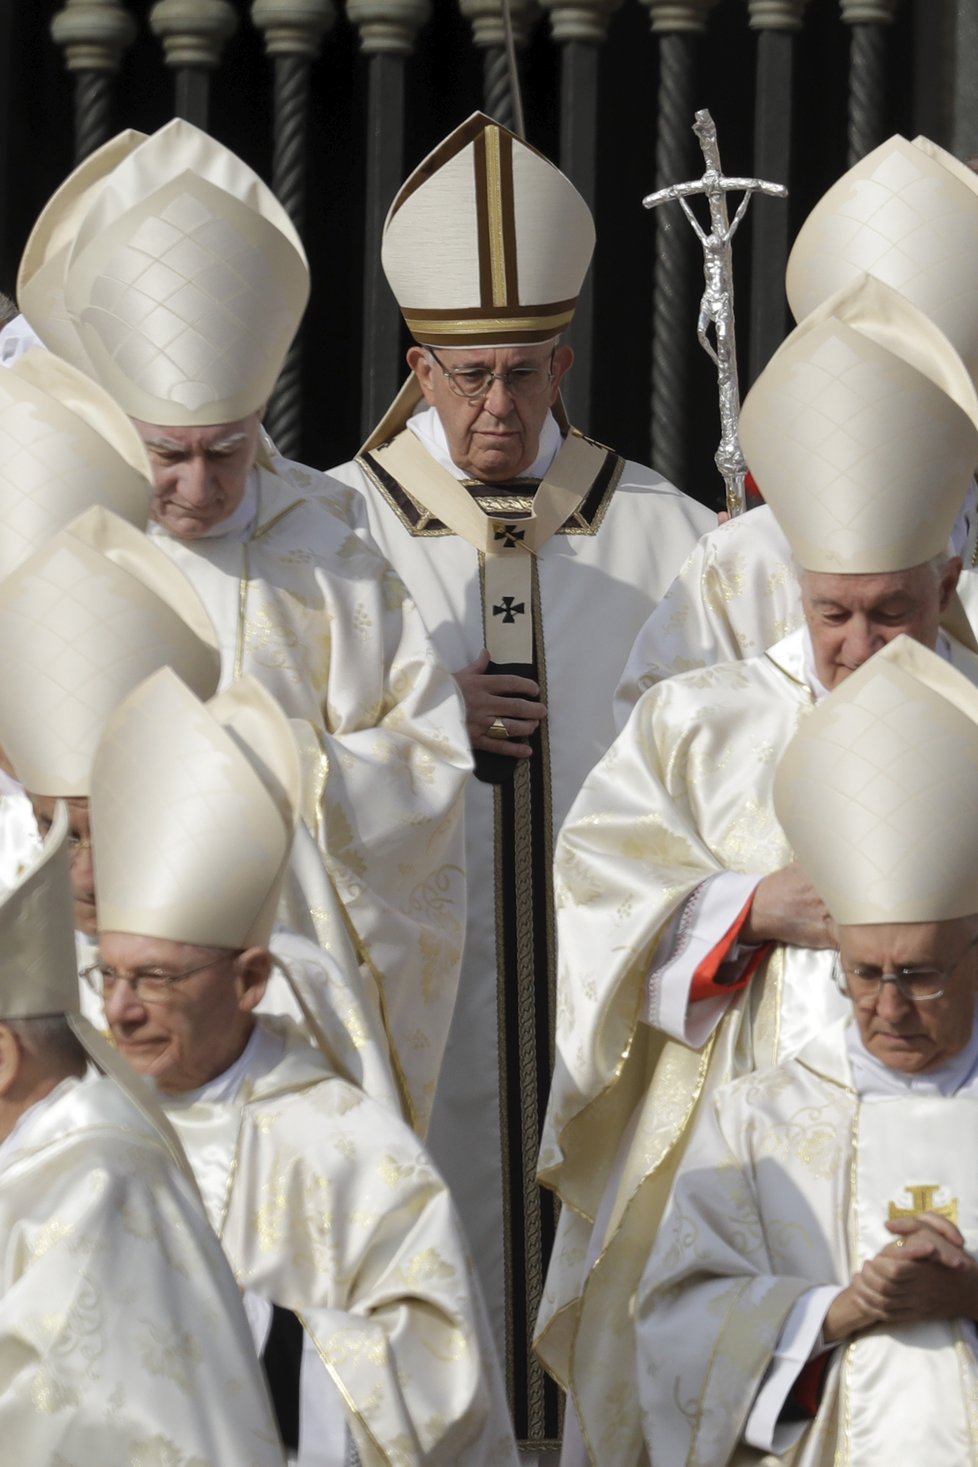 Papež František ve Vatikánu svatořečil papeže Pavla VI. a arcibiskupa Romera